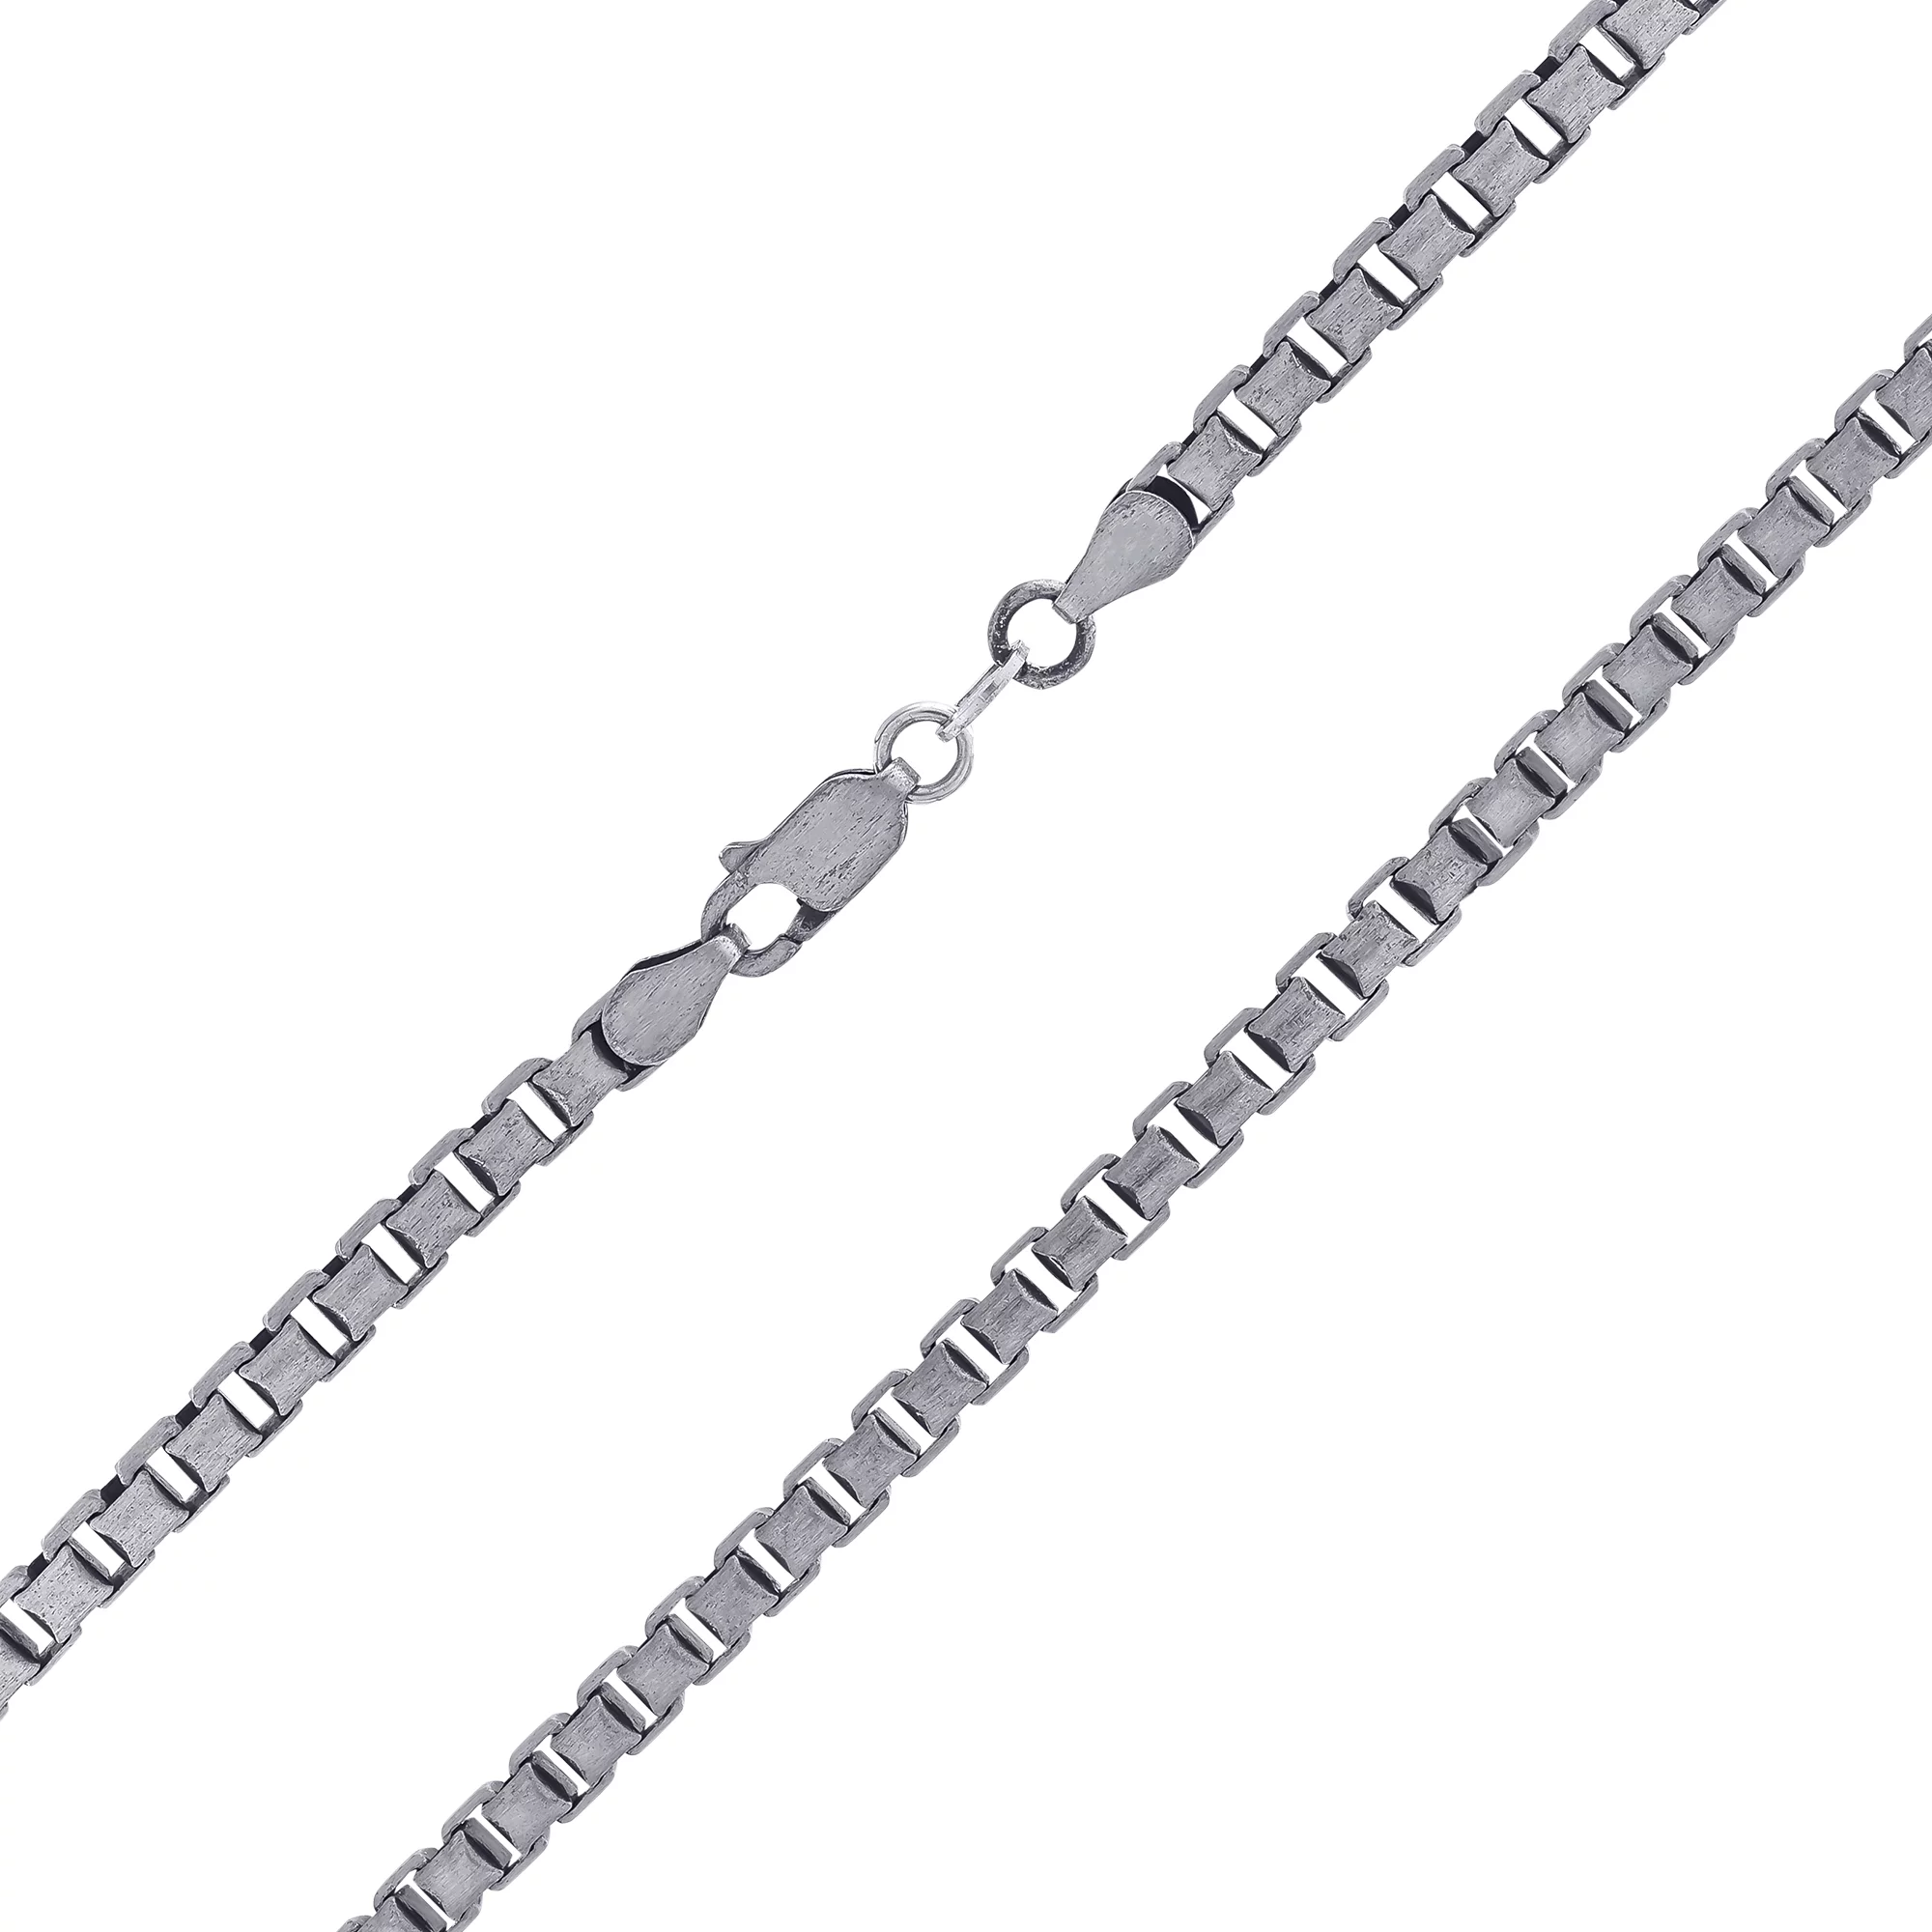 Цепочка серебряная с чернением Венецианское плетение. Артикул 7908/8609/50: цена, отзывы, фото – купить в интернет-магазине AURUM